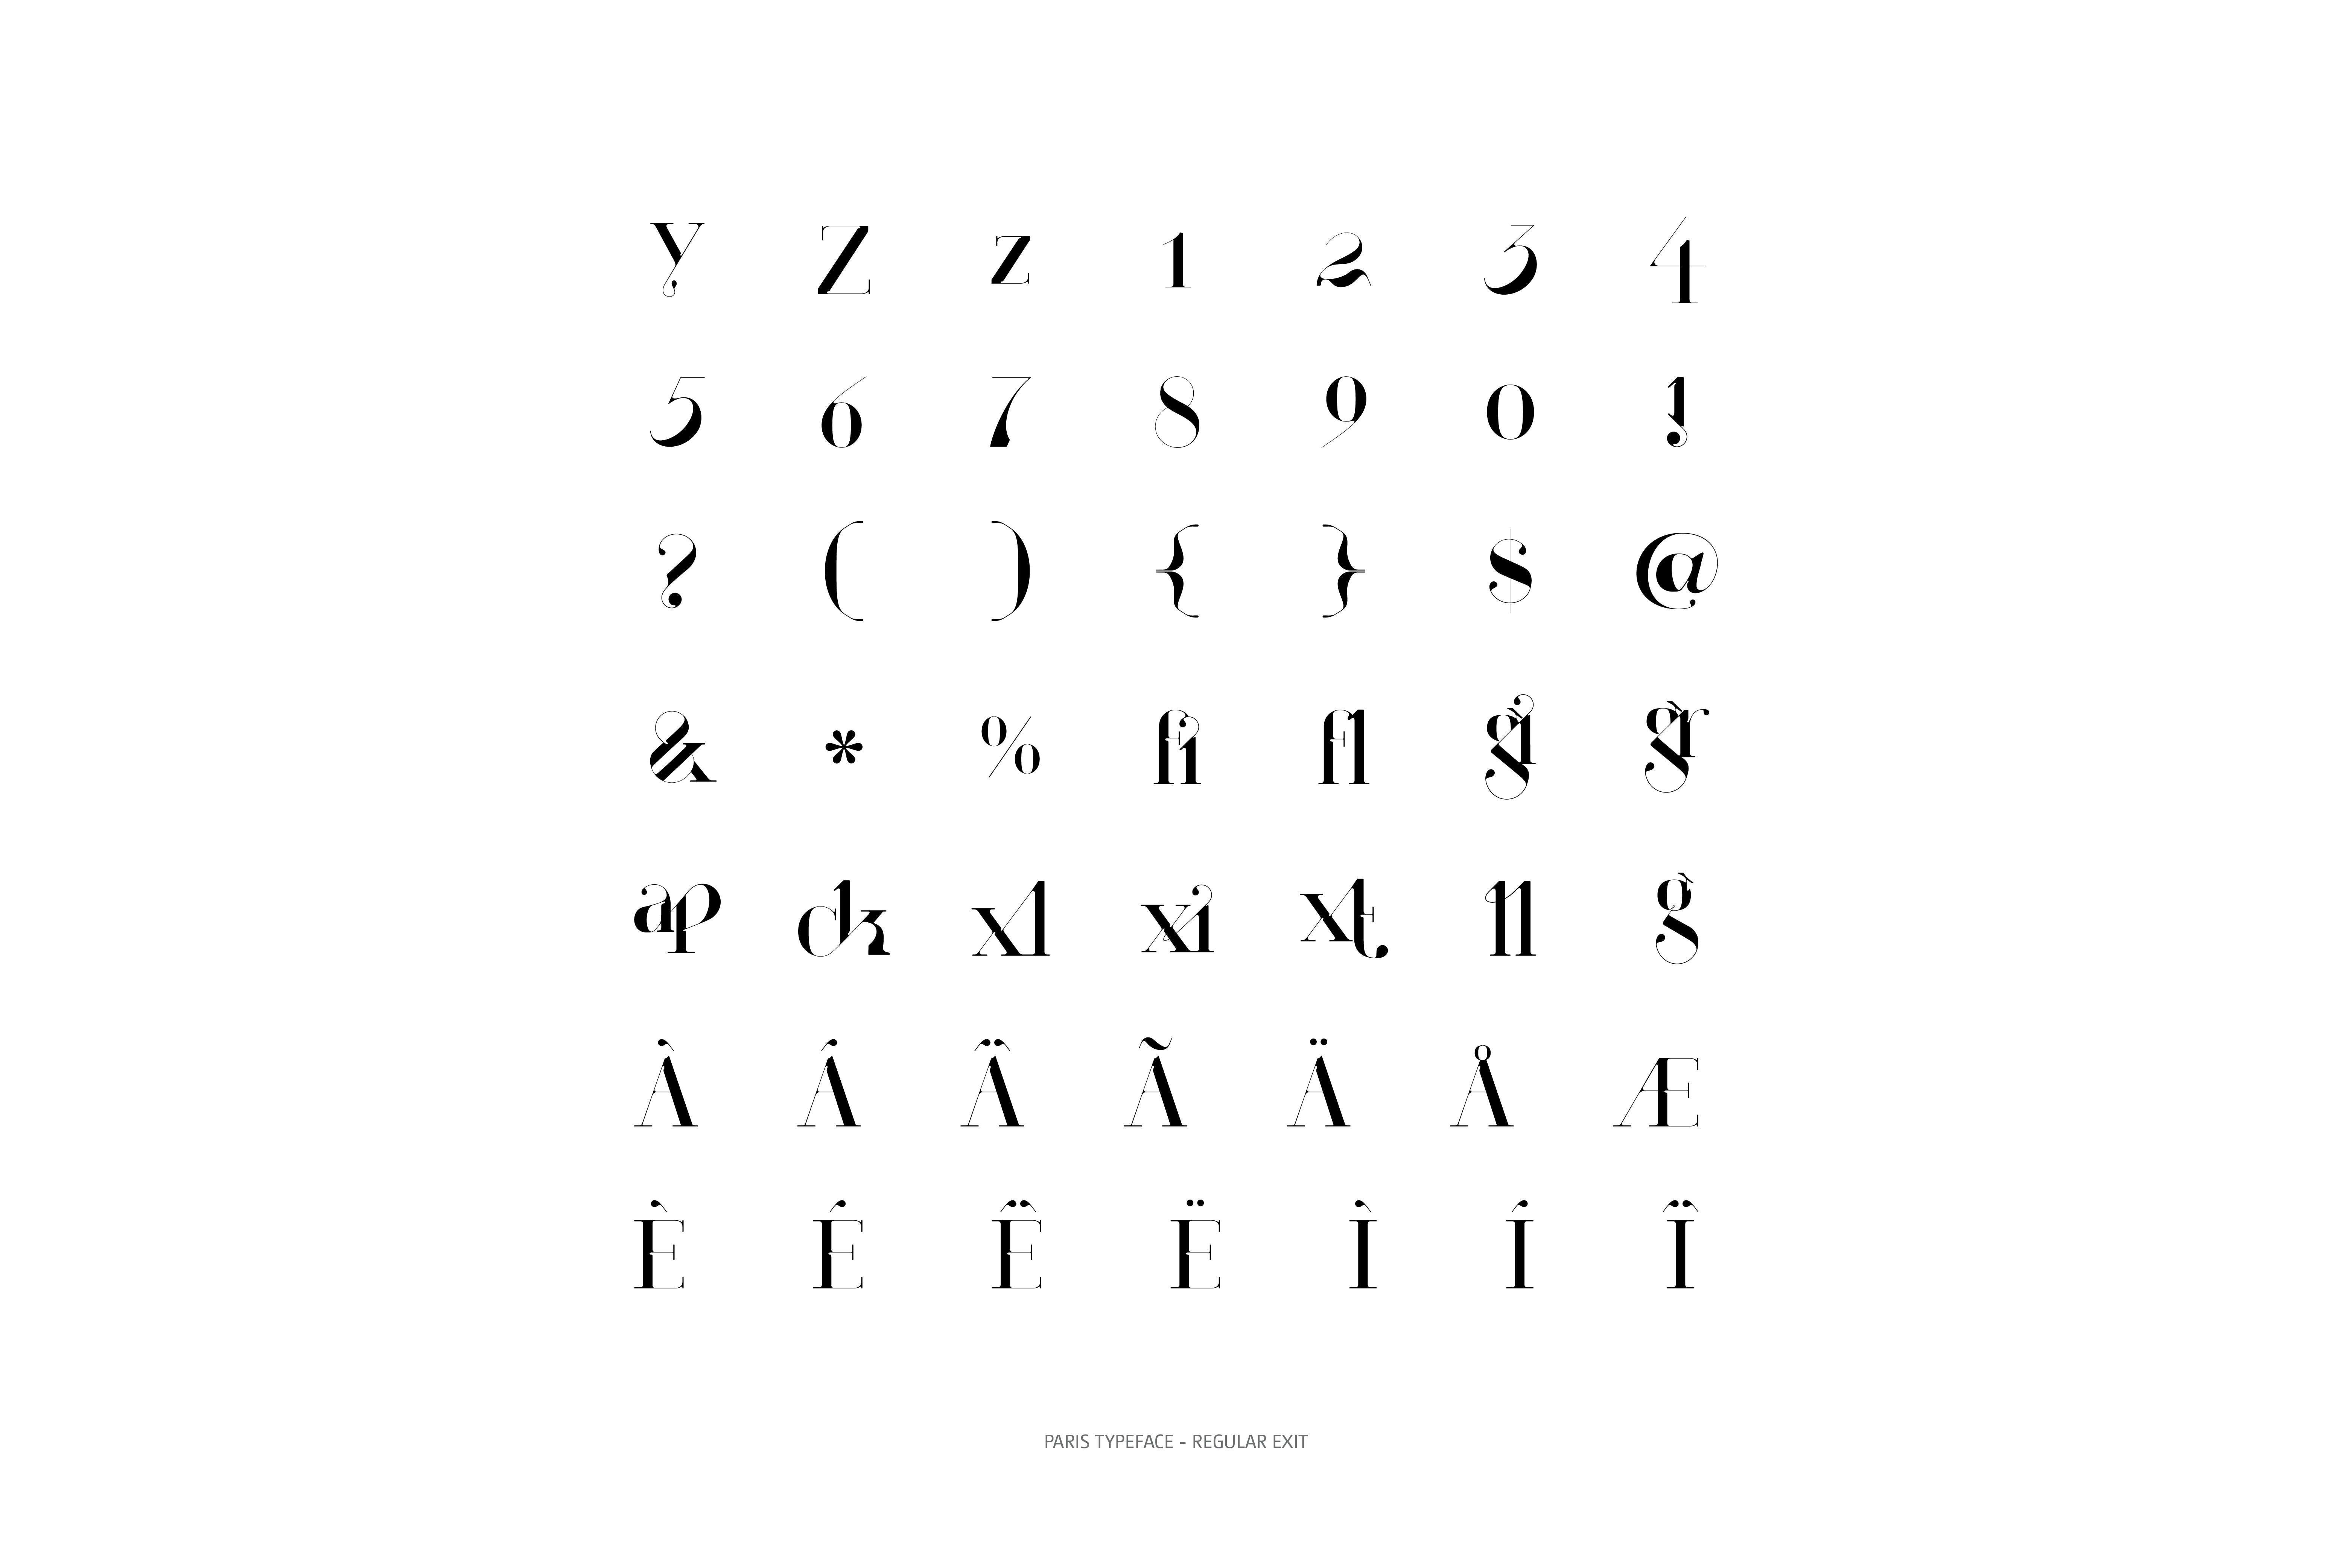 Paris Typeface Regular Exit glyphs collection